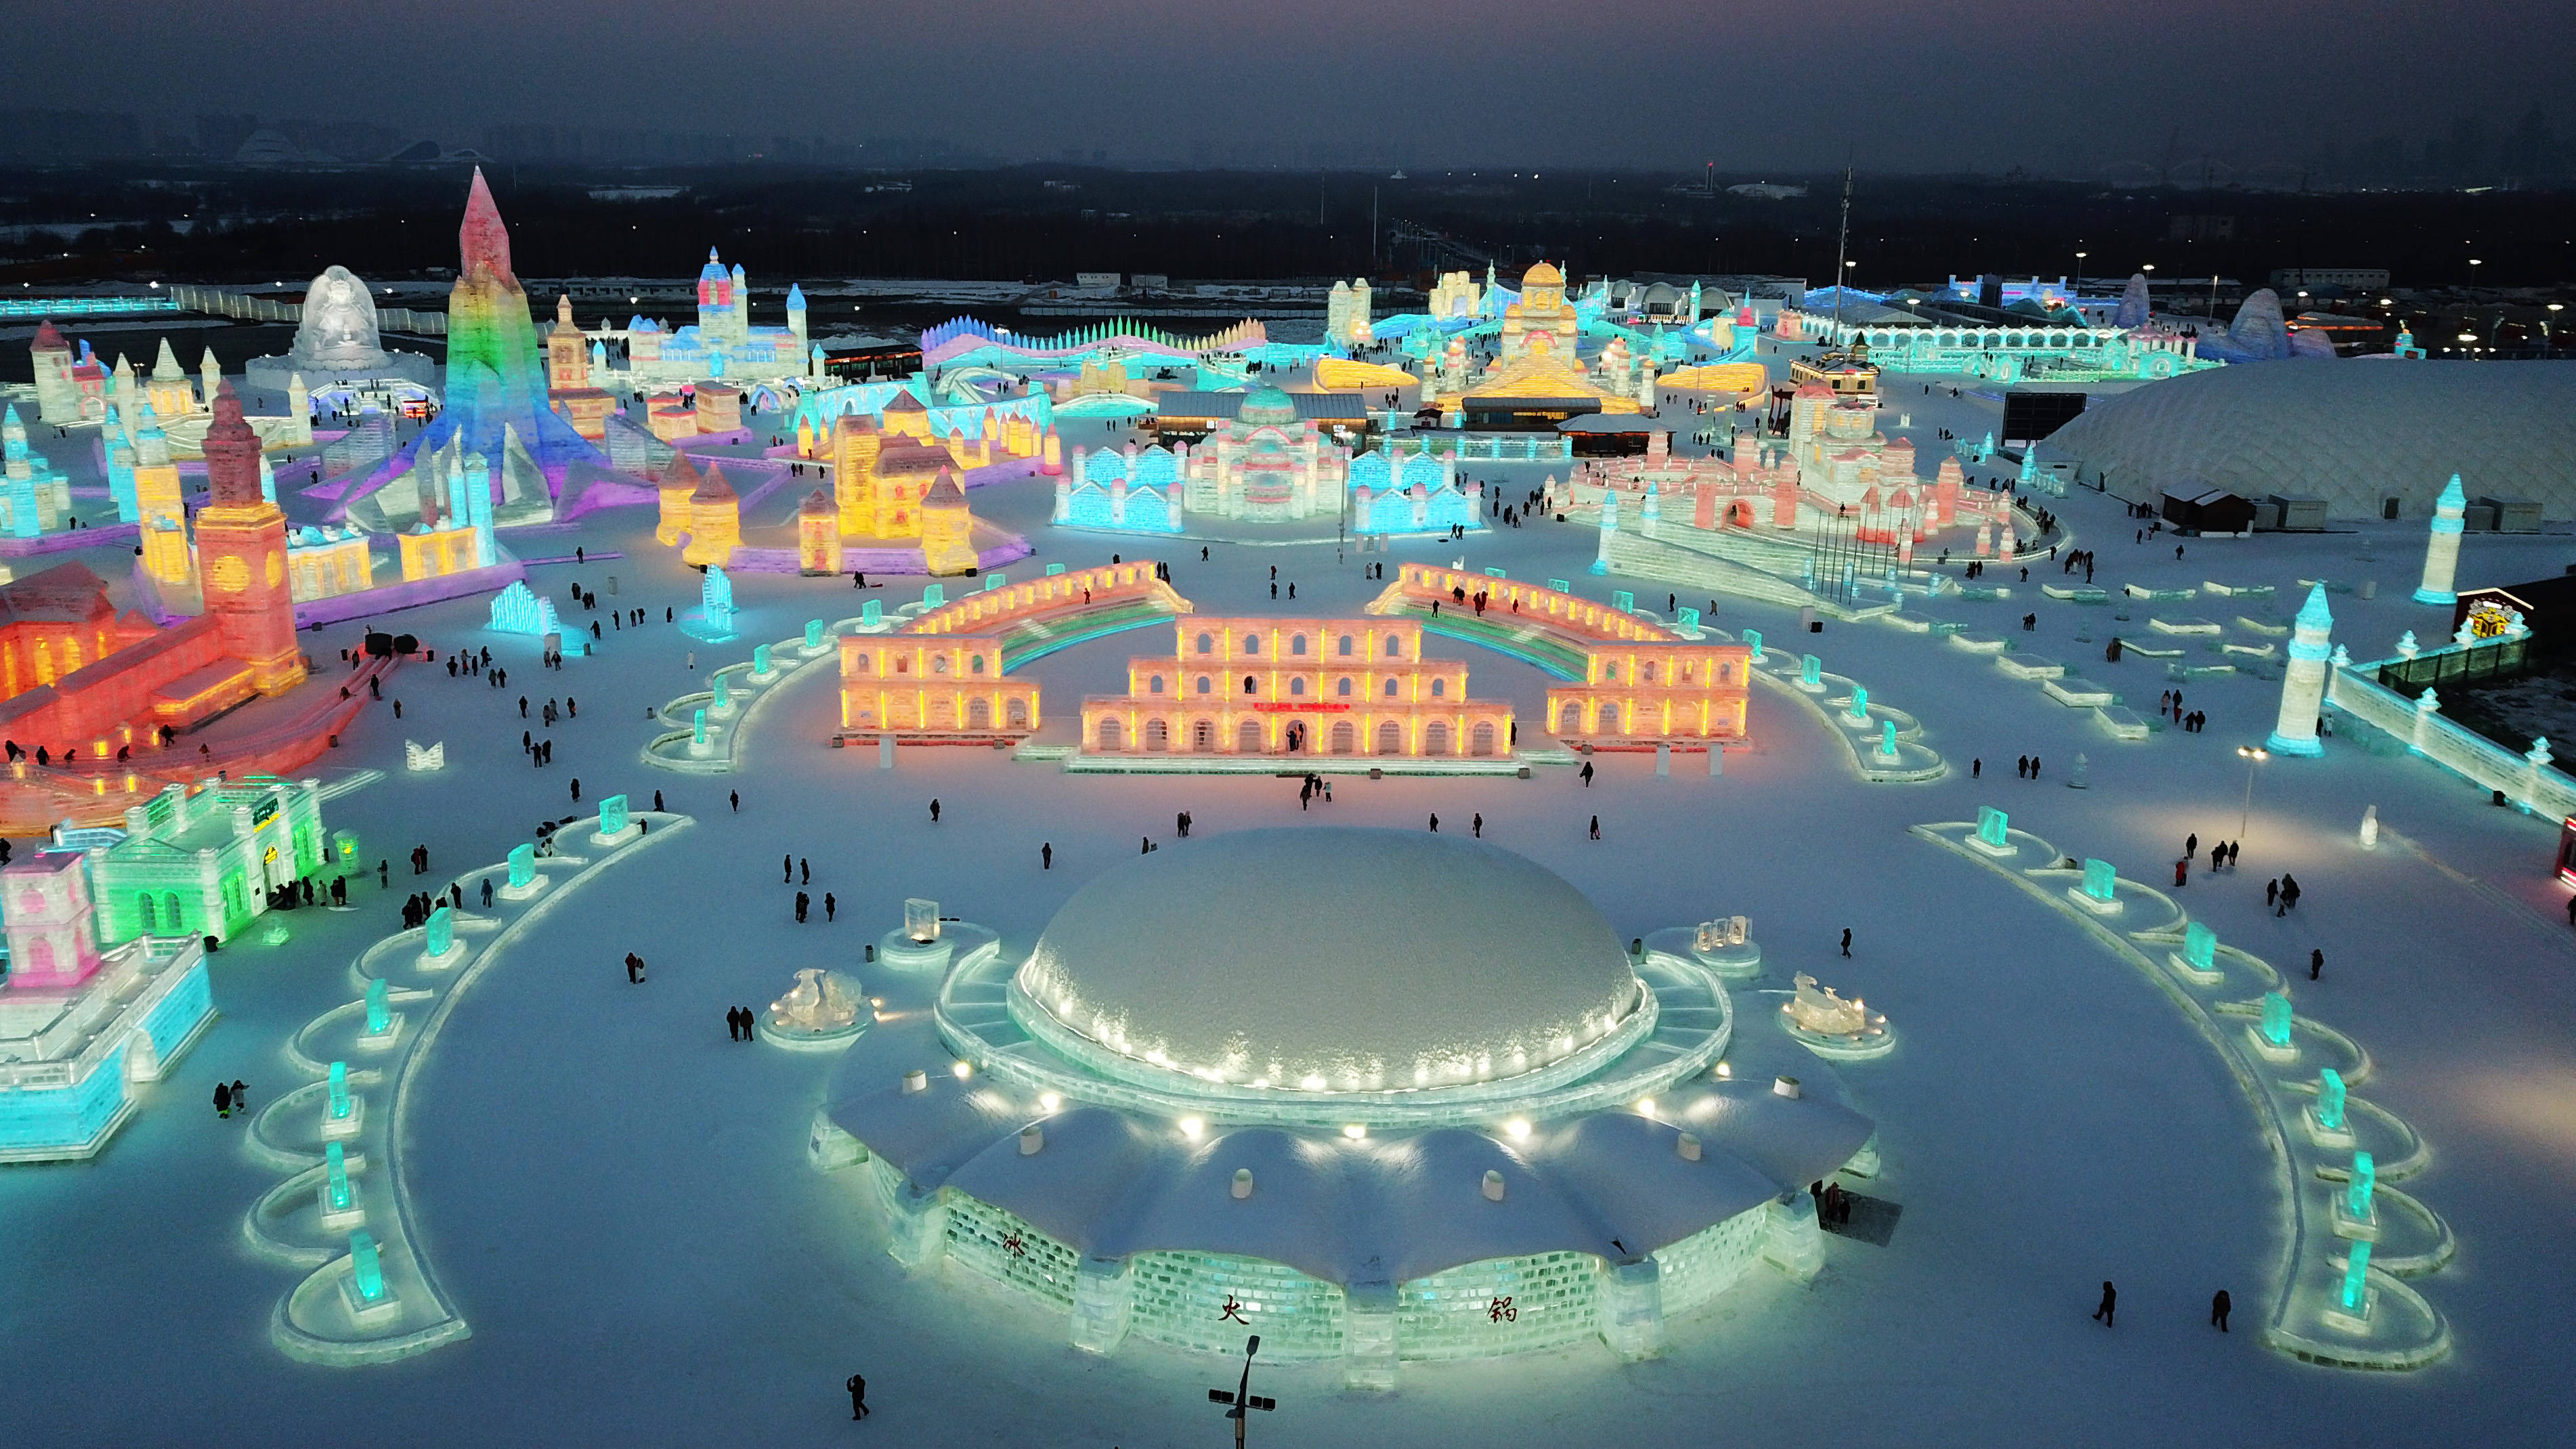 哈尔滨冰雪大世界2021图片